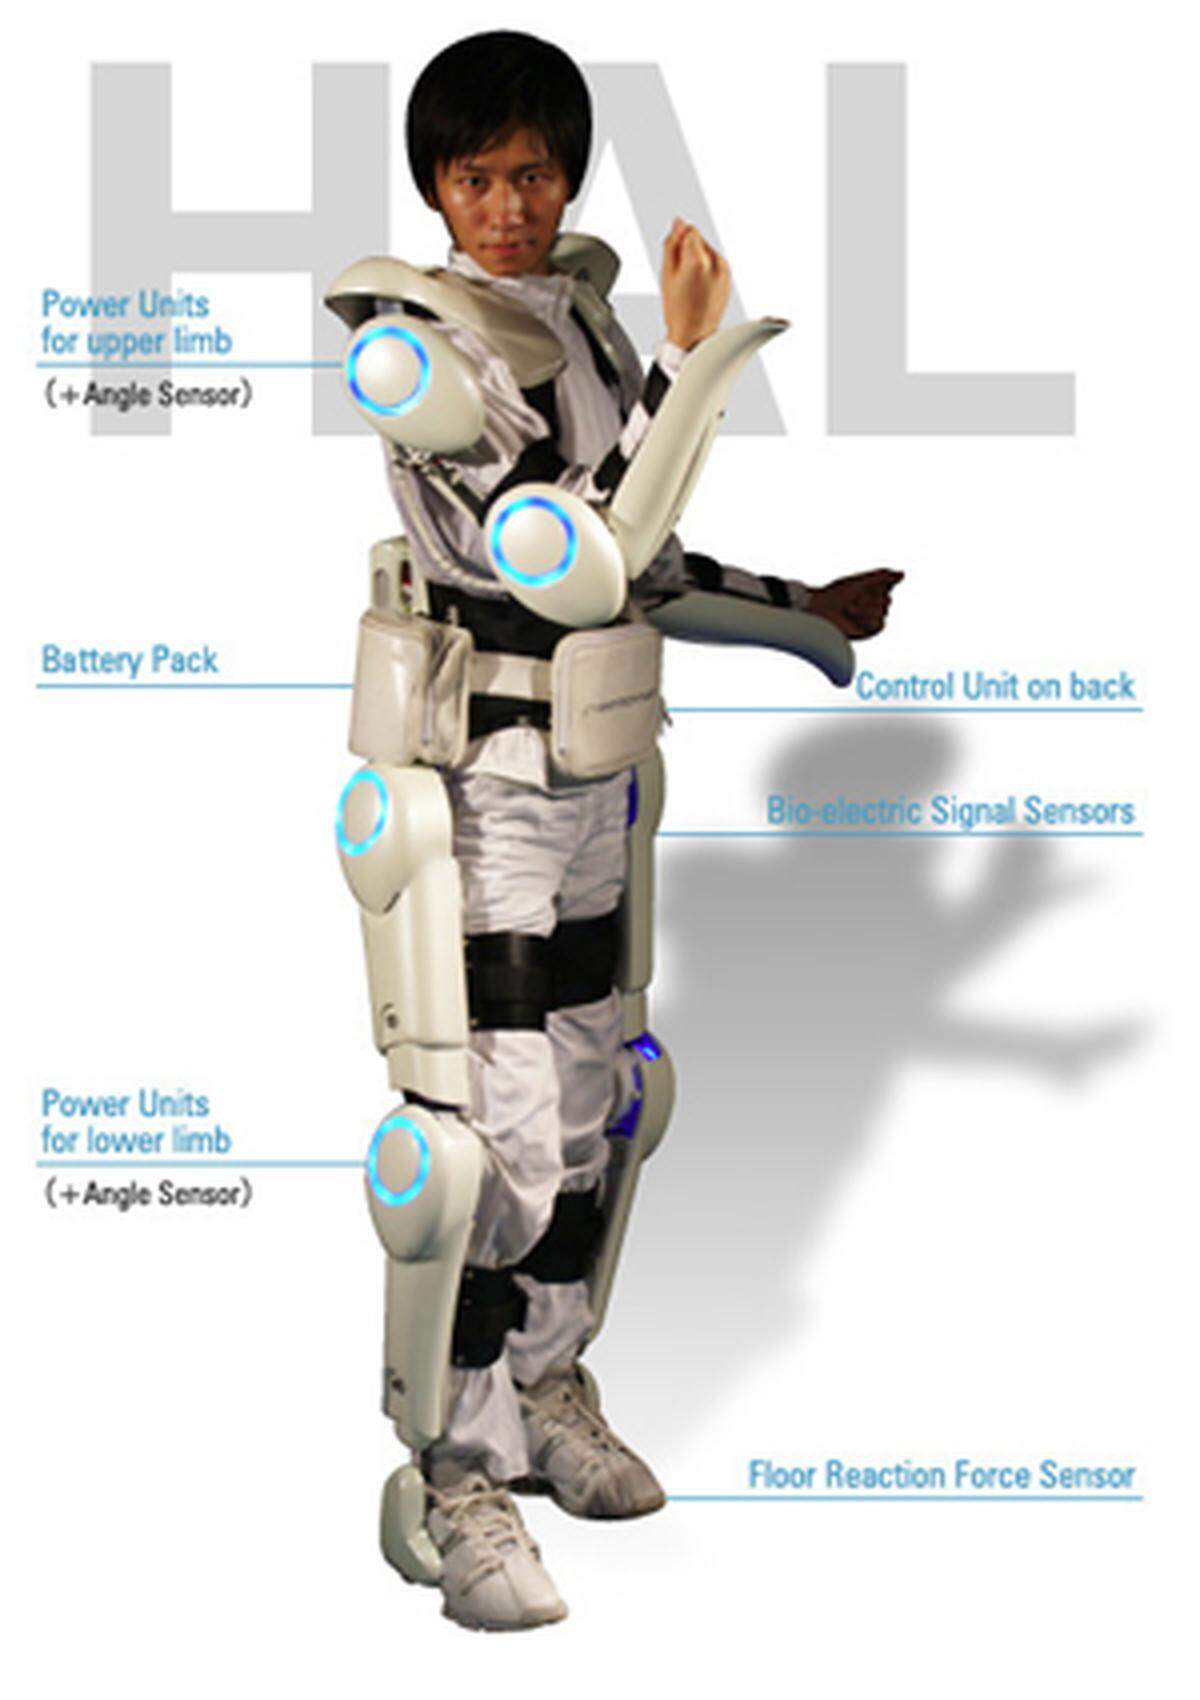 Etwas futuristischer wirkt der Roboter-Anzug HAL (Hybrid Assistive Limb) vom japanischen Hersteller Cyberdyne. Er soll älteren und gebrechlichen Menschen den Alltag erleichtern. Für Science-Fiction-Fans beinhaltet das Exoskelett gleich zwei bekannte Referenzen. HAL 9000 war der Computer aus "2001: Odyssee im Weltraum", der Besatzungsmitglieder ermordete. Cyberdyne ist im entsprechenden Film das Unternehmen, das den "Terminator" gebaut hat. Bleibt zu hoffen, dass dieses Gerät mehr Positives leistet.